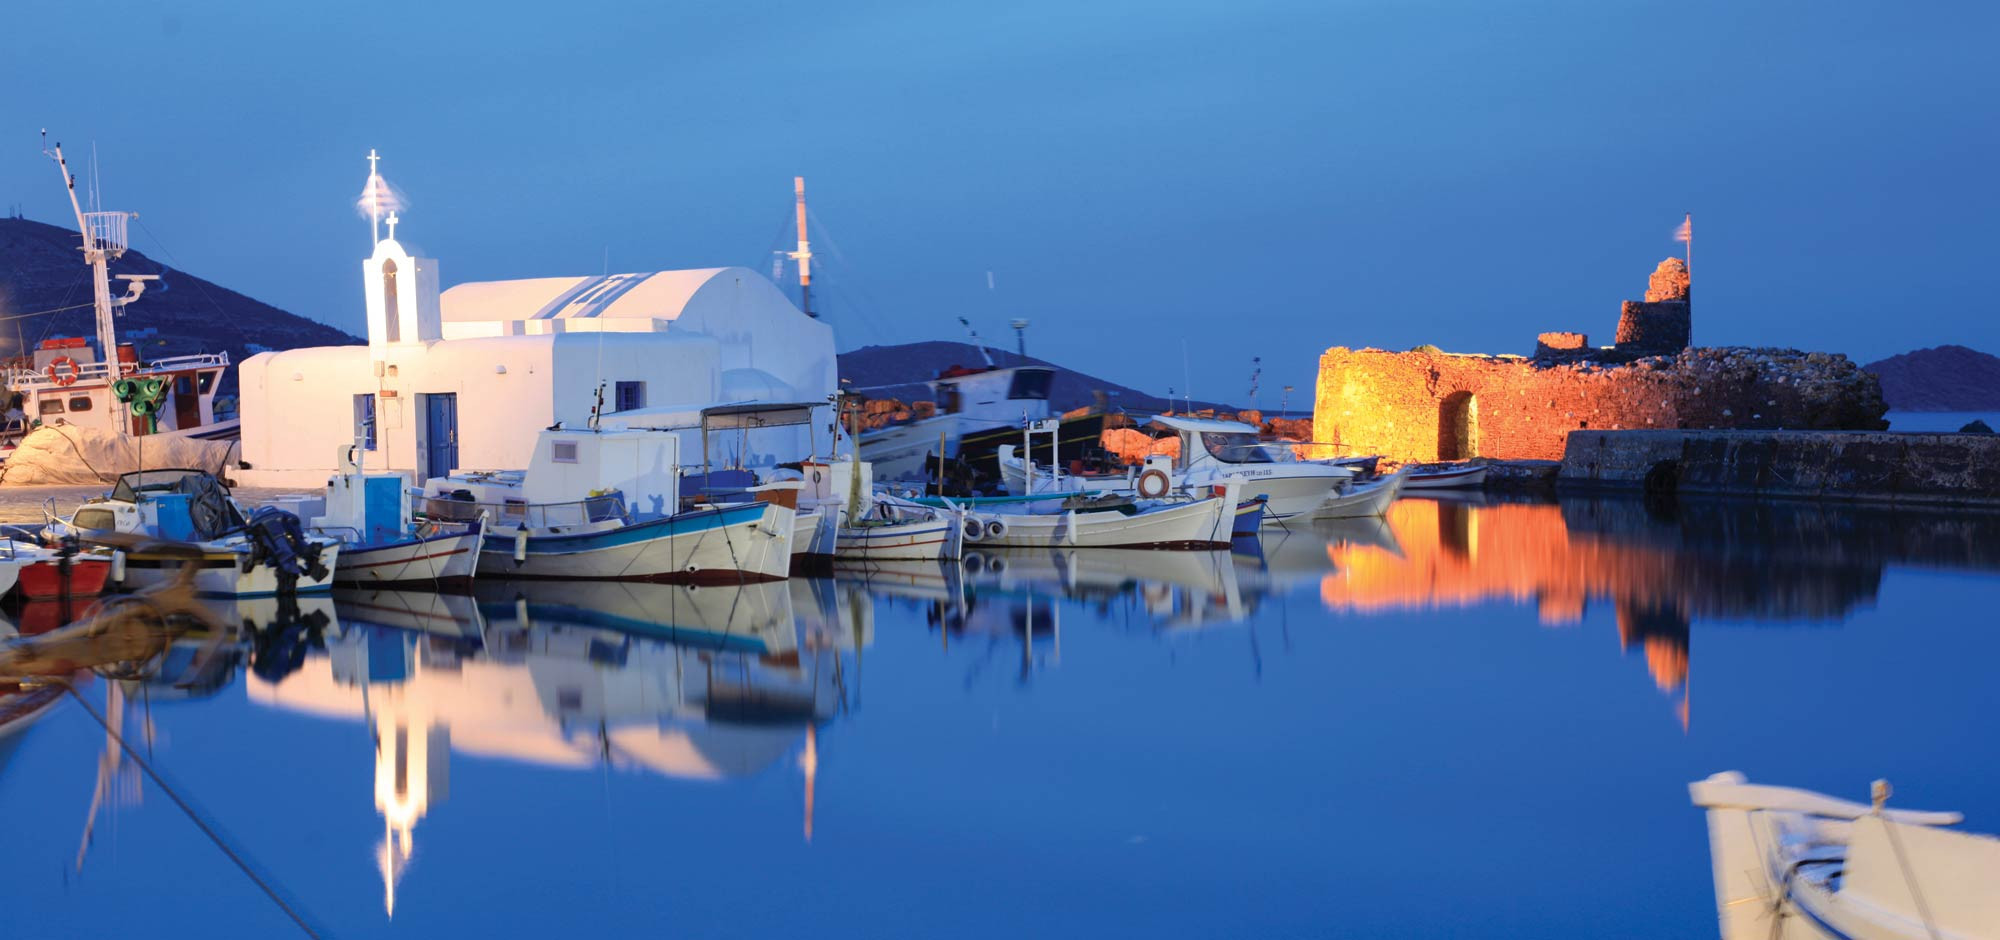 Τέσσερα ελληνικά νησιά στα έξι καλύτερα της Ευρώπης